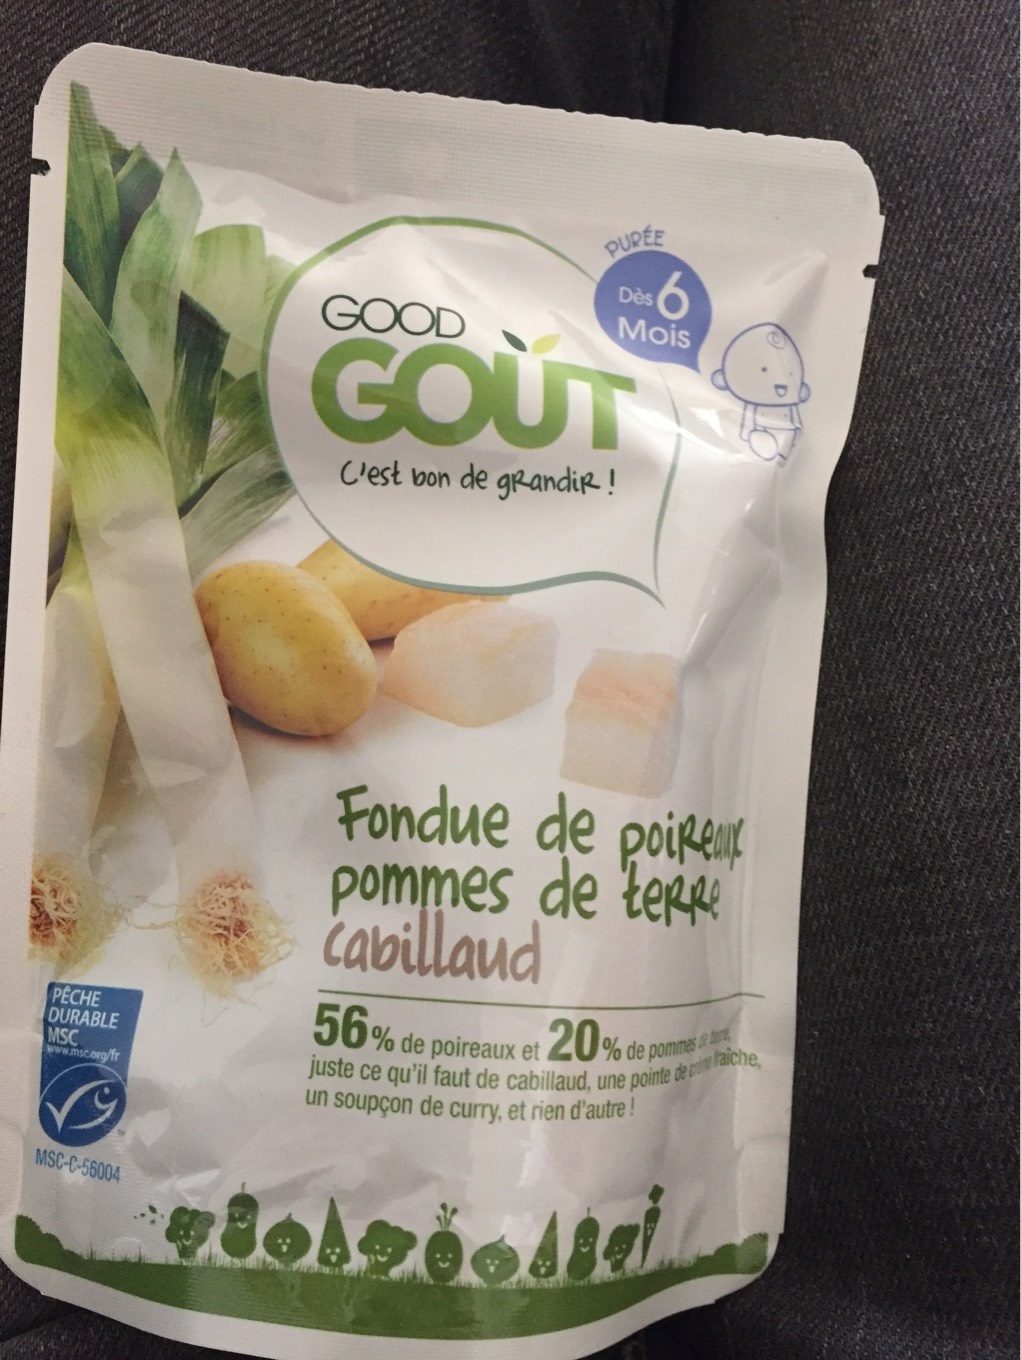 Fondue de poireaux, pommes de terre, Cabillaud-Good Gout-190g - Product - fr